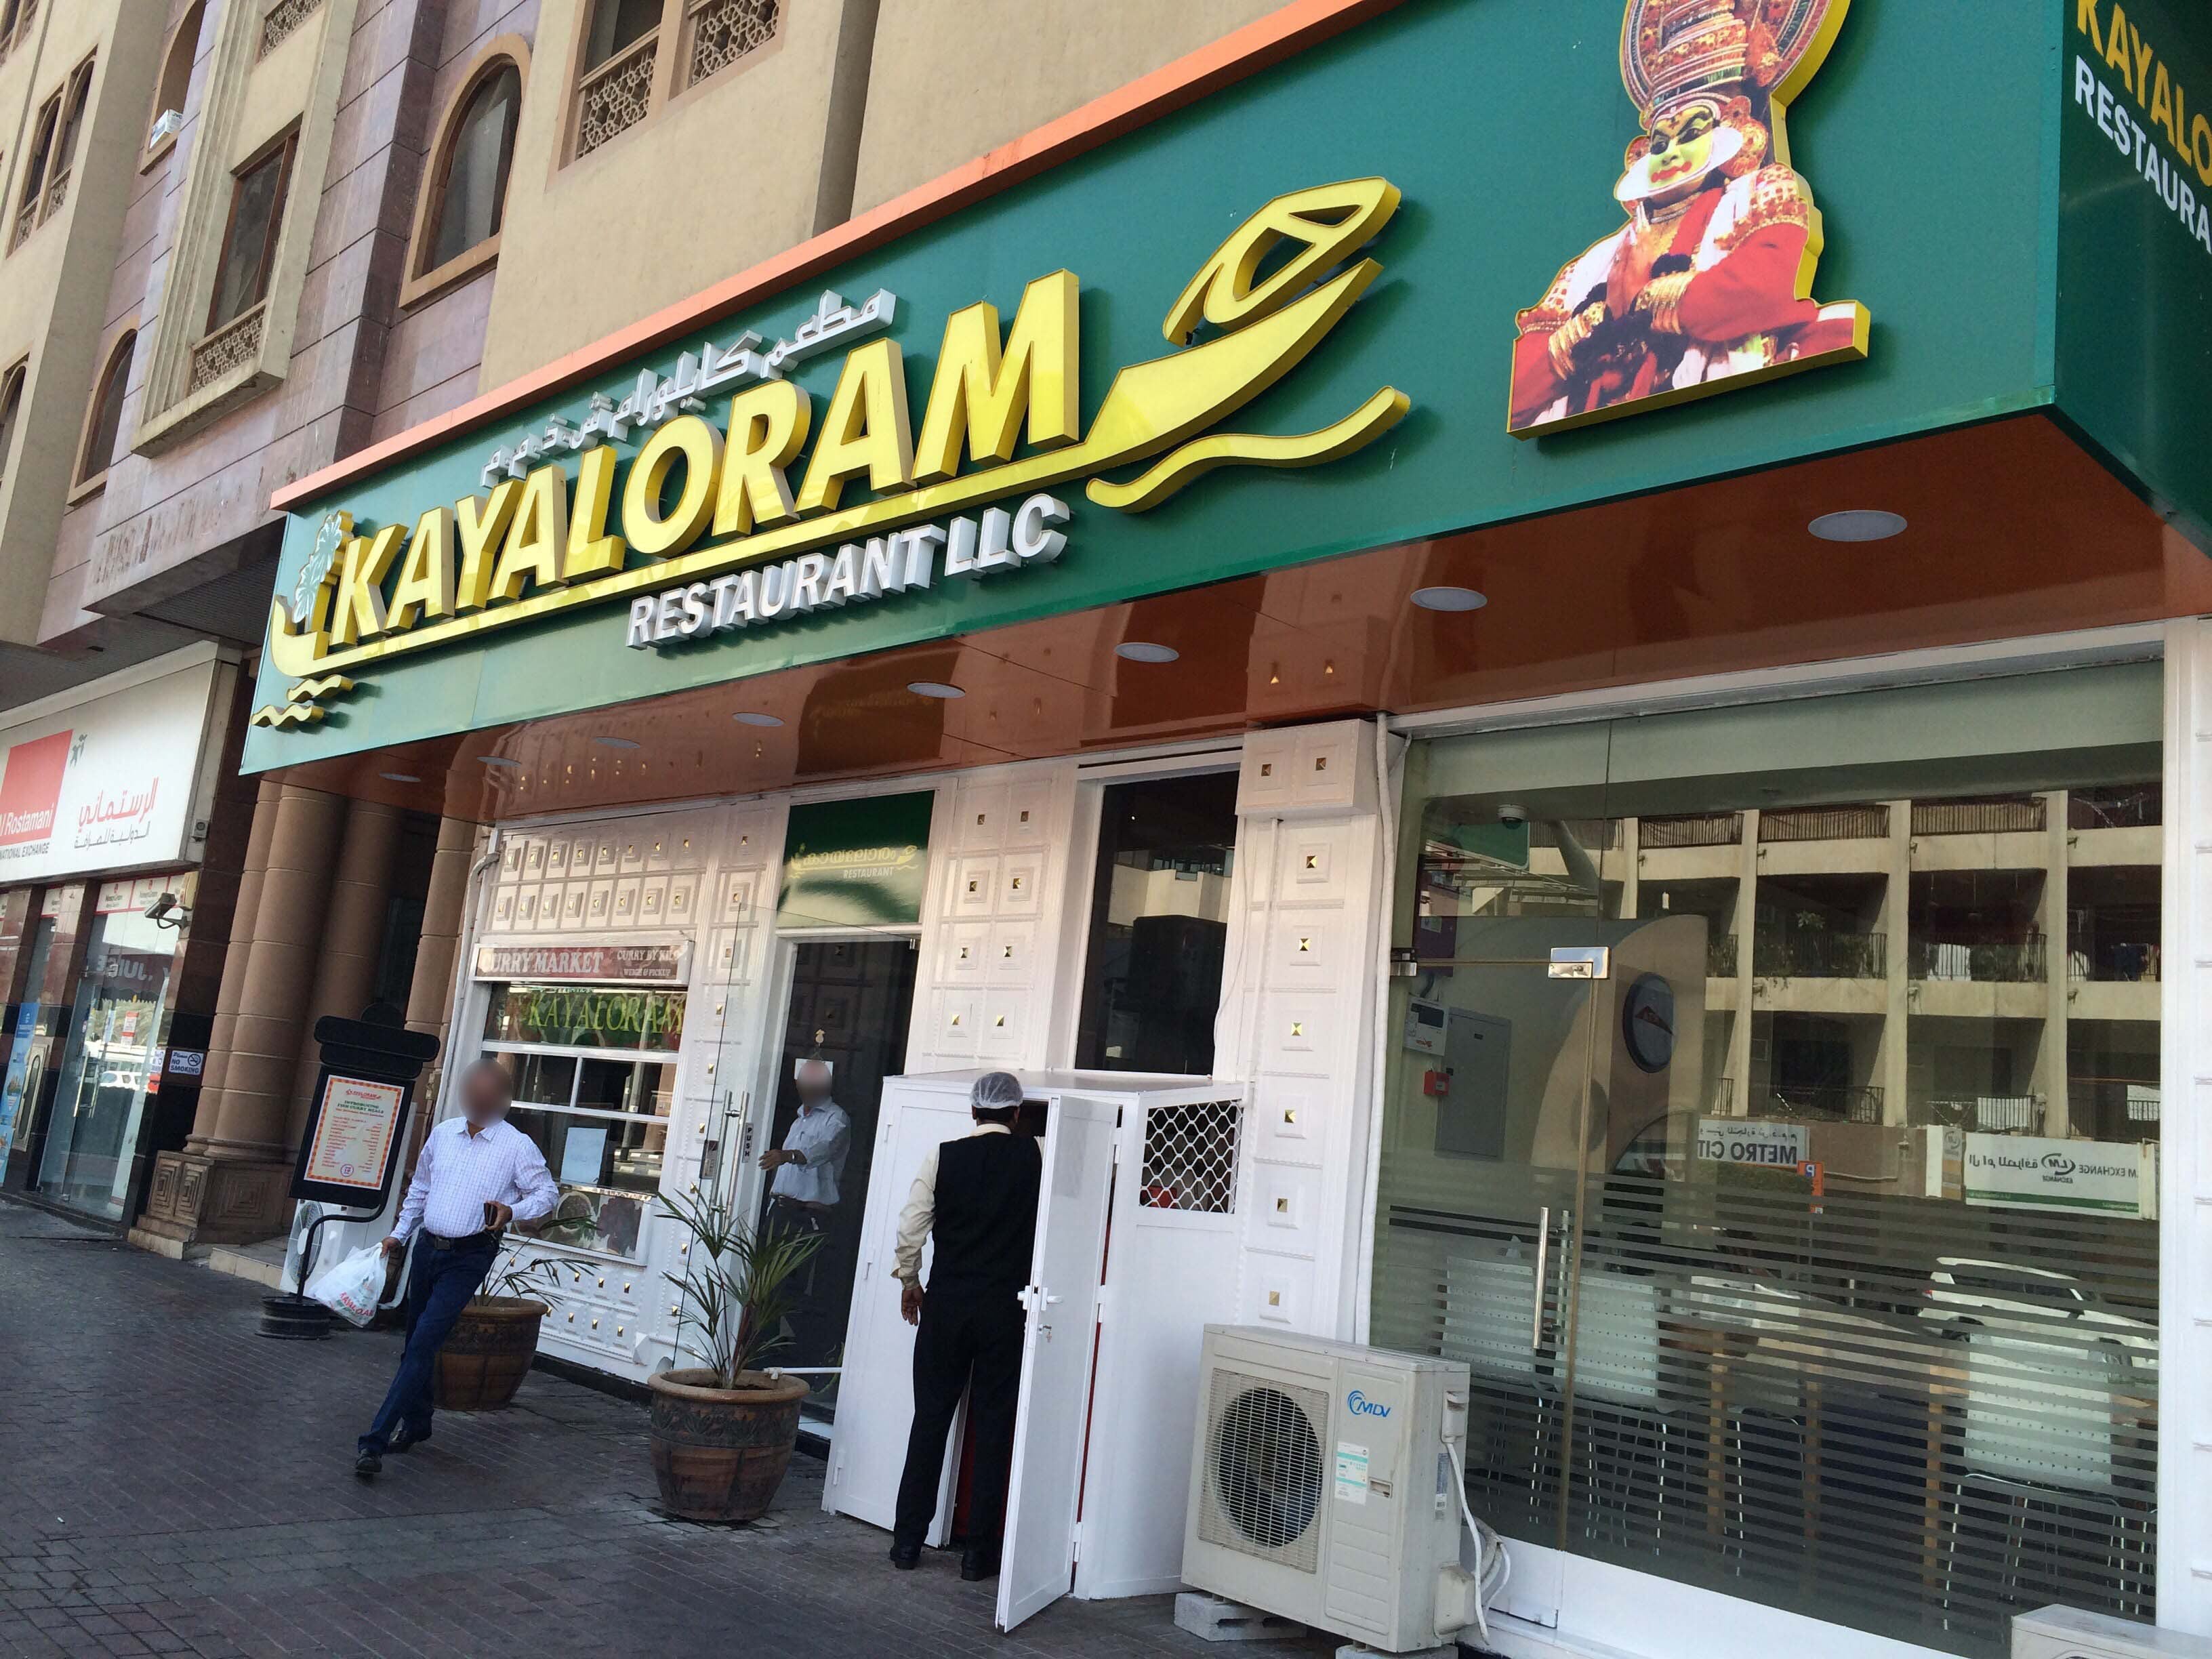 Kayaloram Restaurant